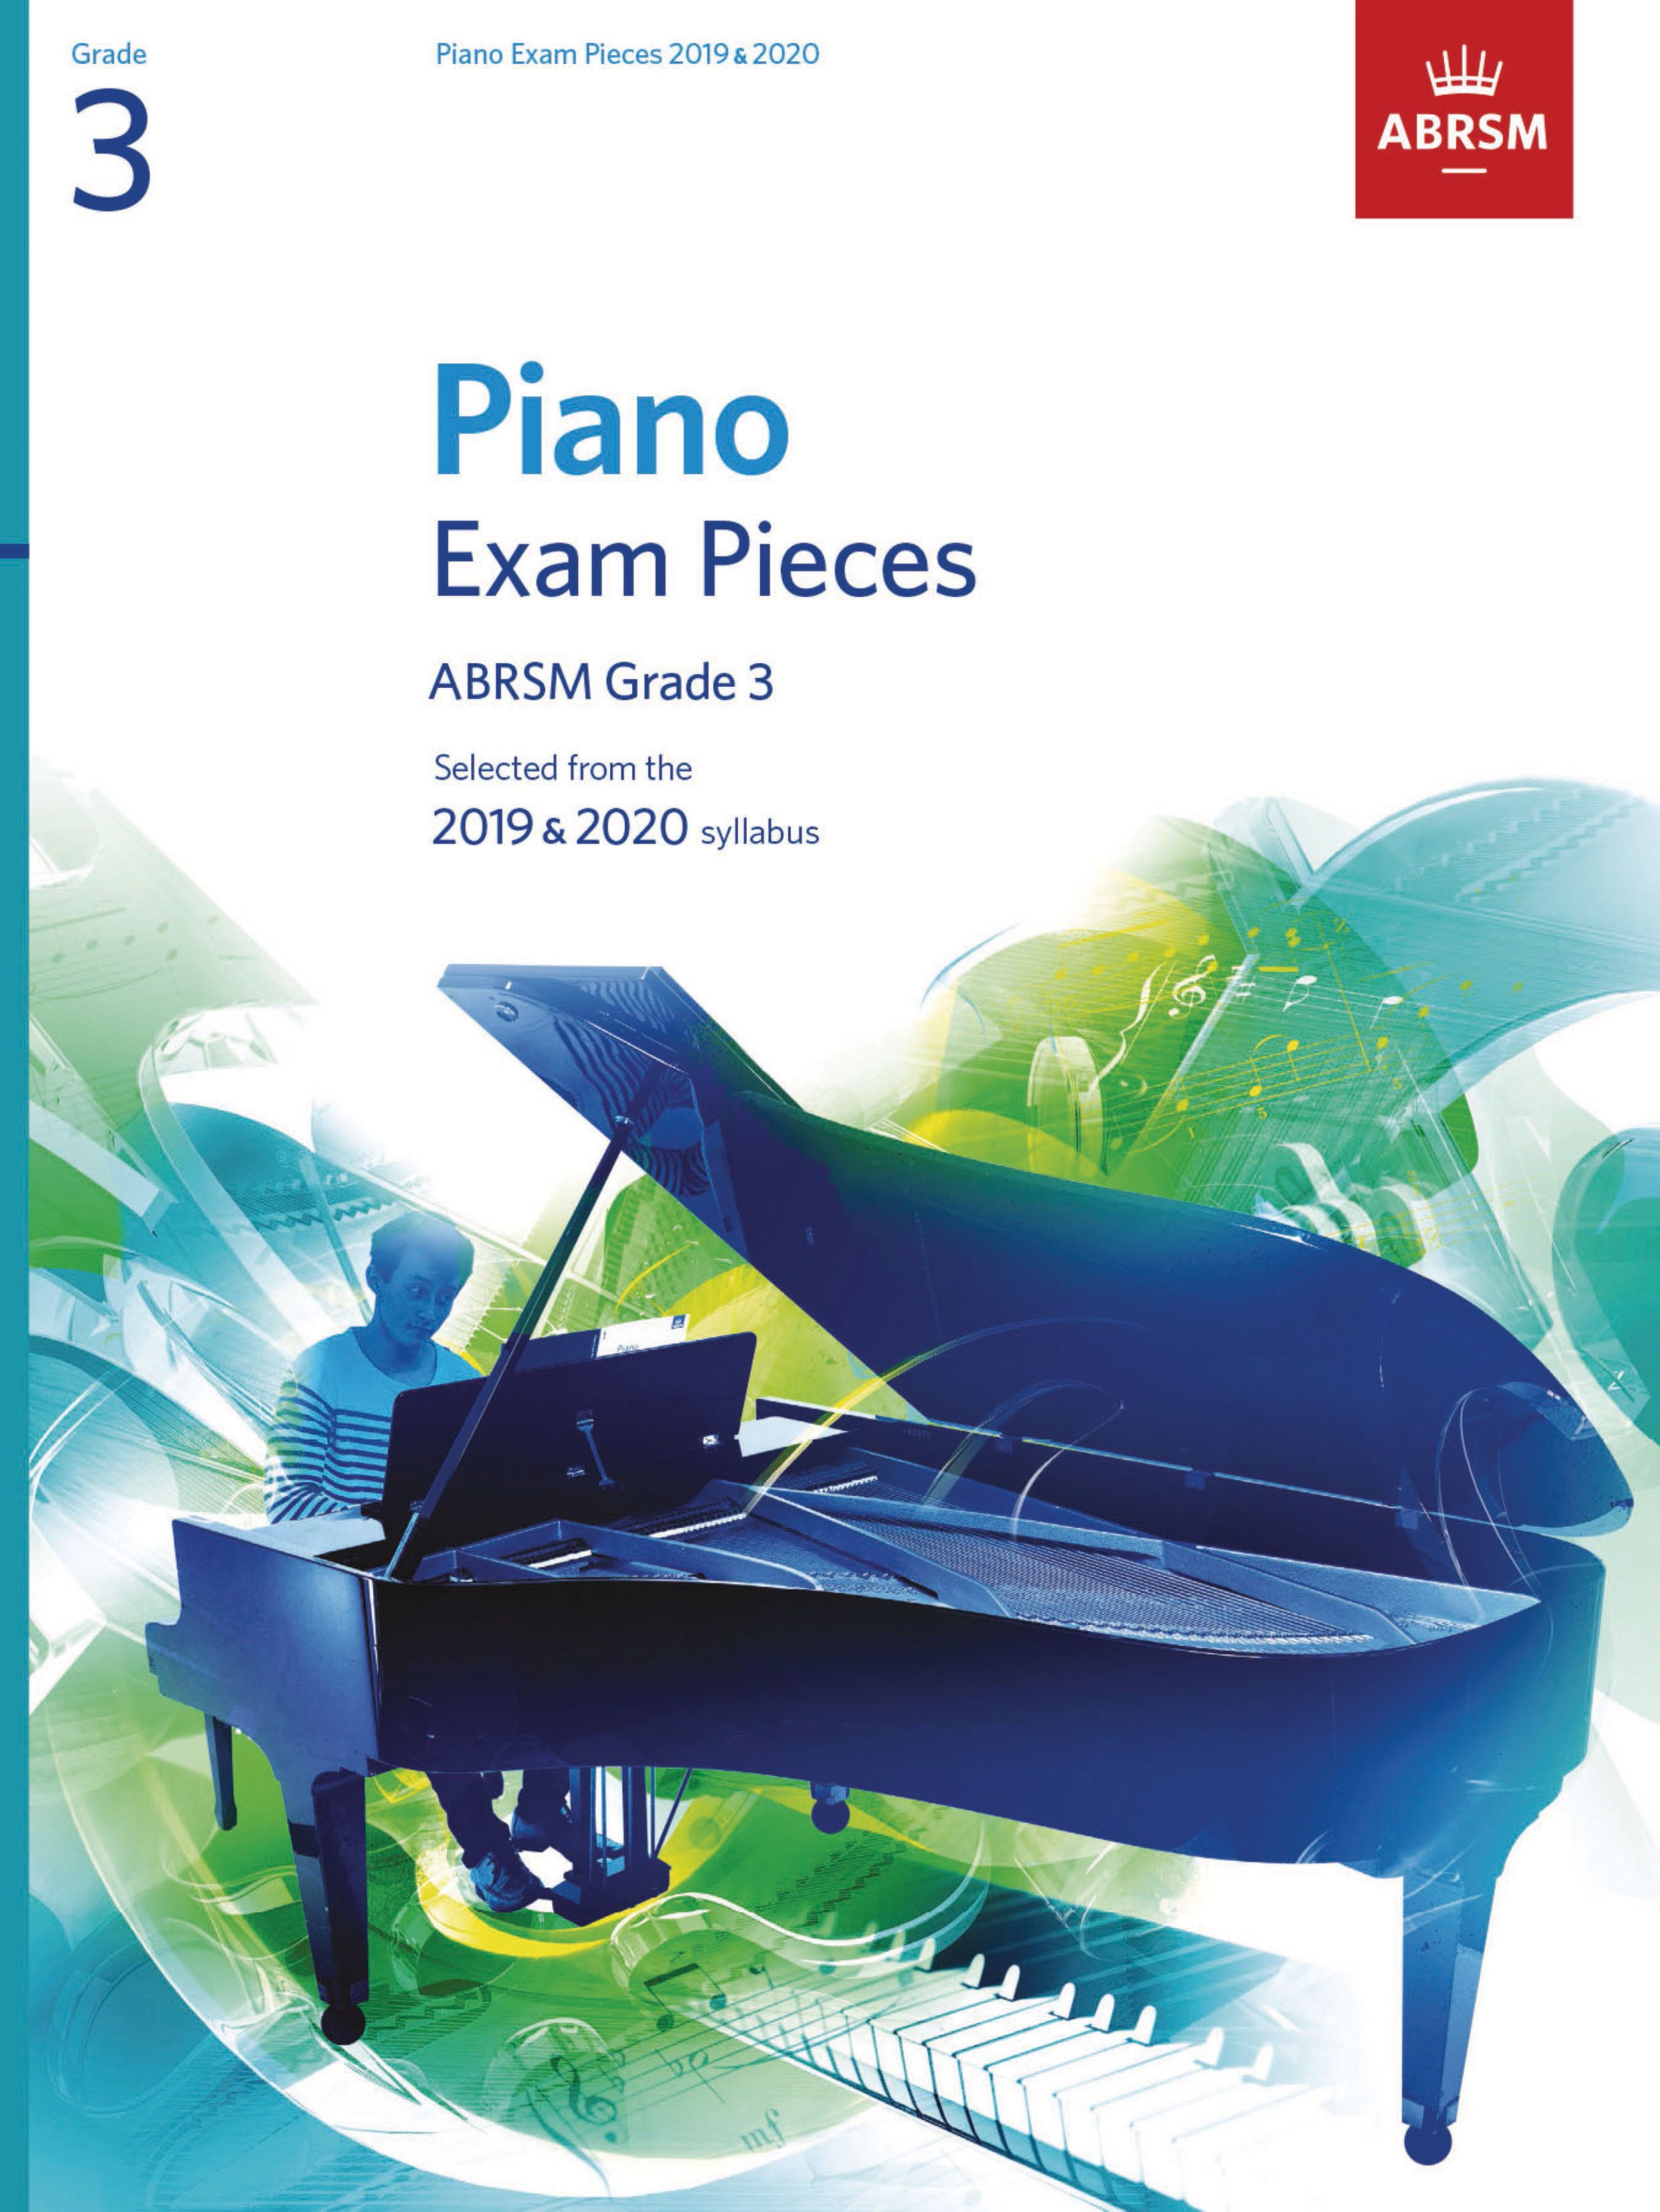 ABRSM-Piano-Exam-Pieces-2019-2020-Grade-3